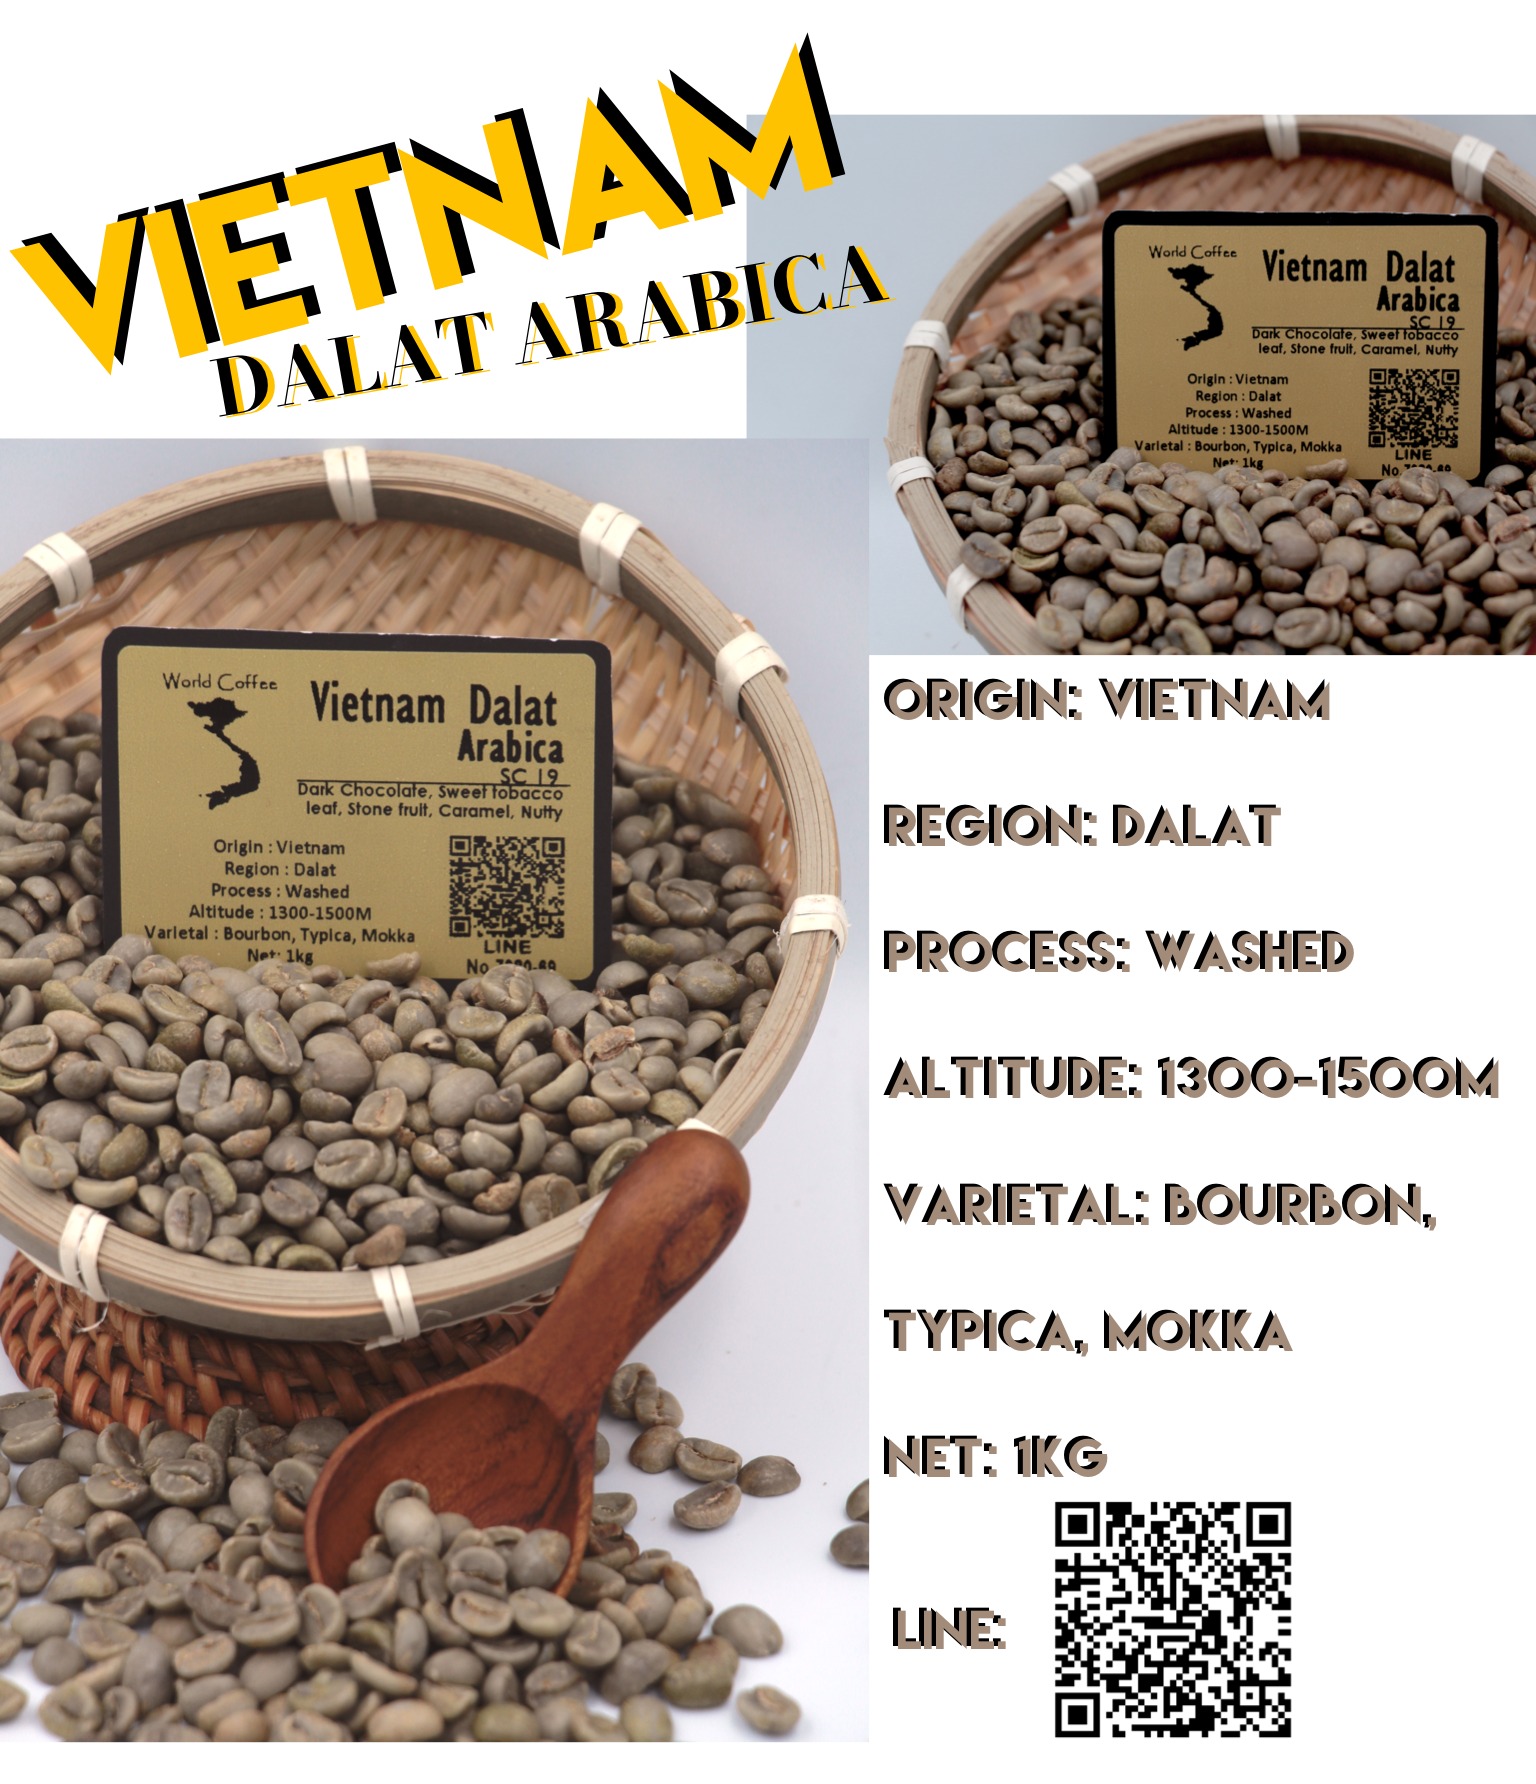 พร้อมส่ง เมล็ดกาแฟดิบ Vietnam Dalat ArabicaSC19 Washed process ขนาด 1kg. / เมล็ดกาแฟนอก/ เมล็ดกาแฟสาร เวียดนาม/  Vietnam Dalat Arabica 19 green beans 1kg